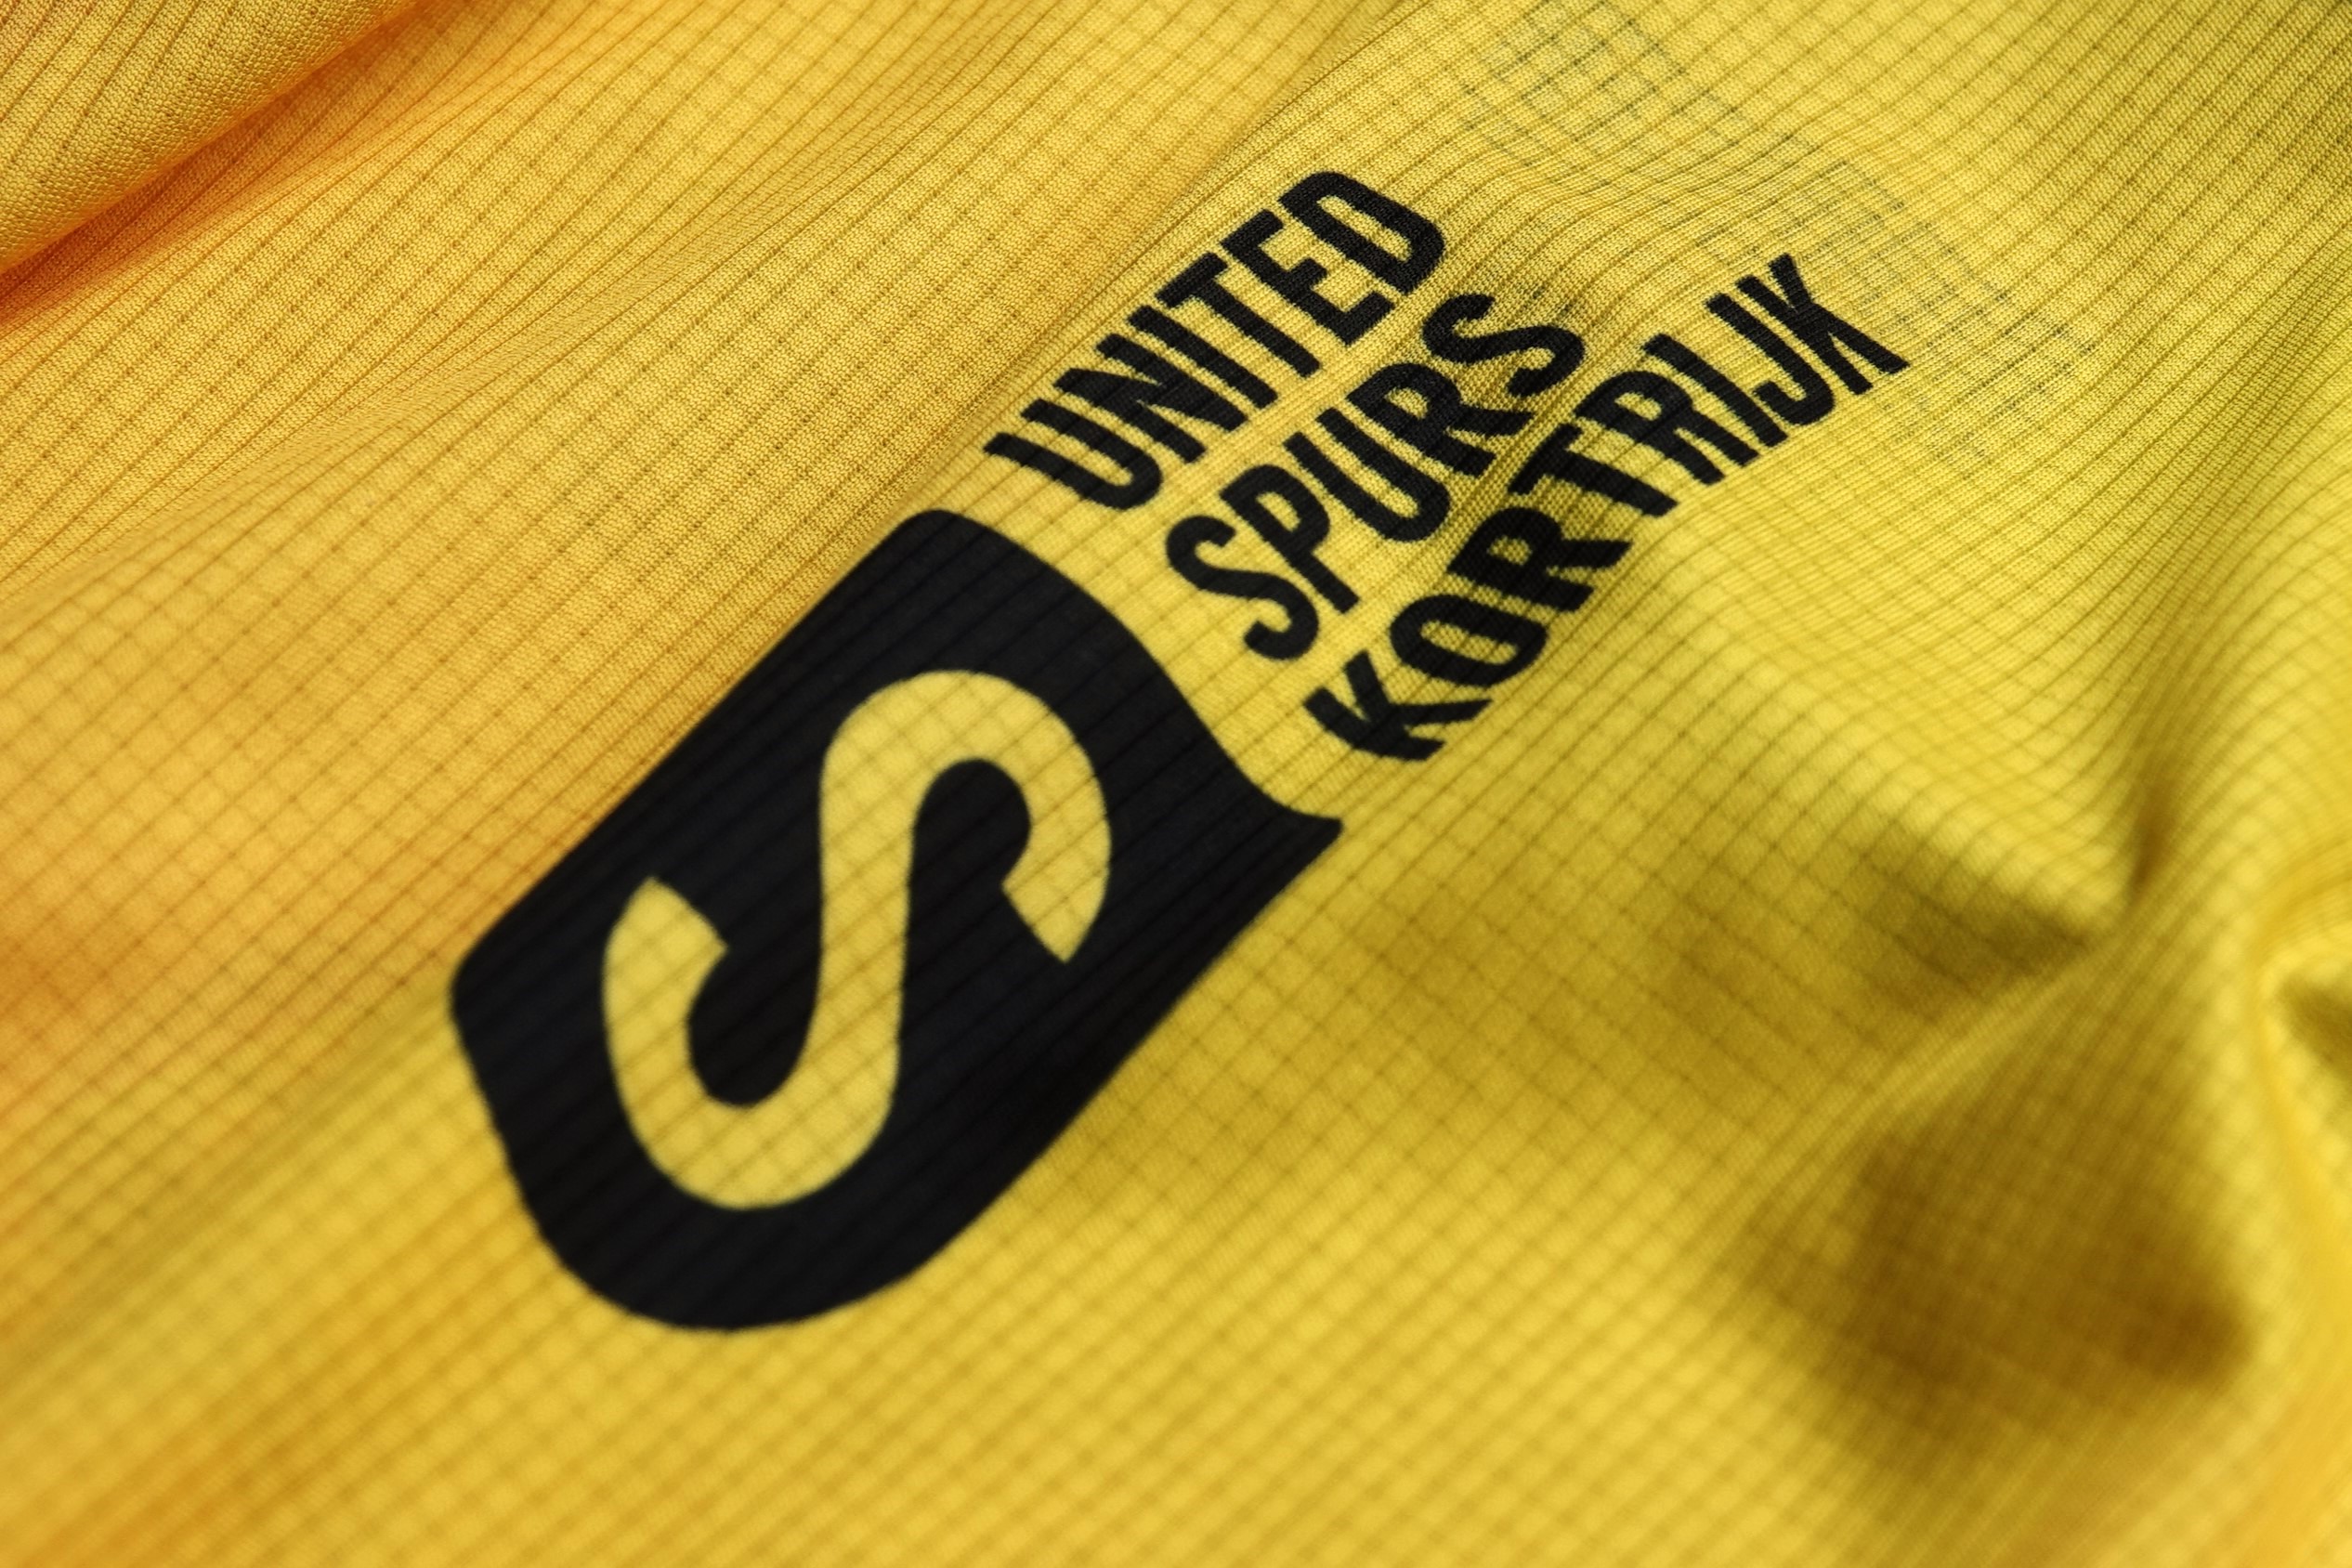 United Spurs Kortrijk - KKS